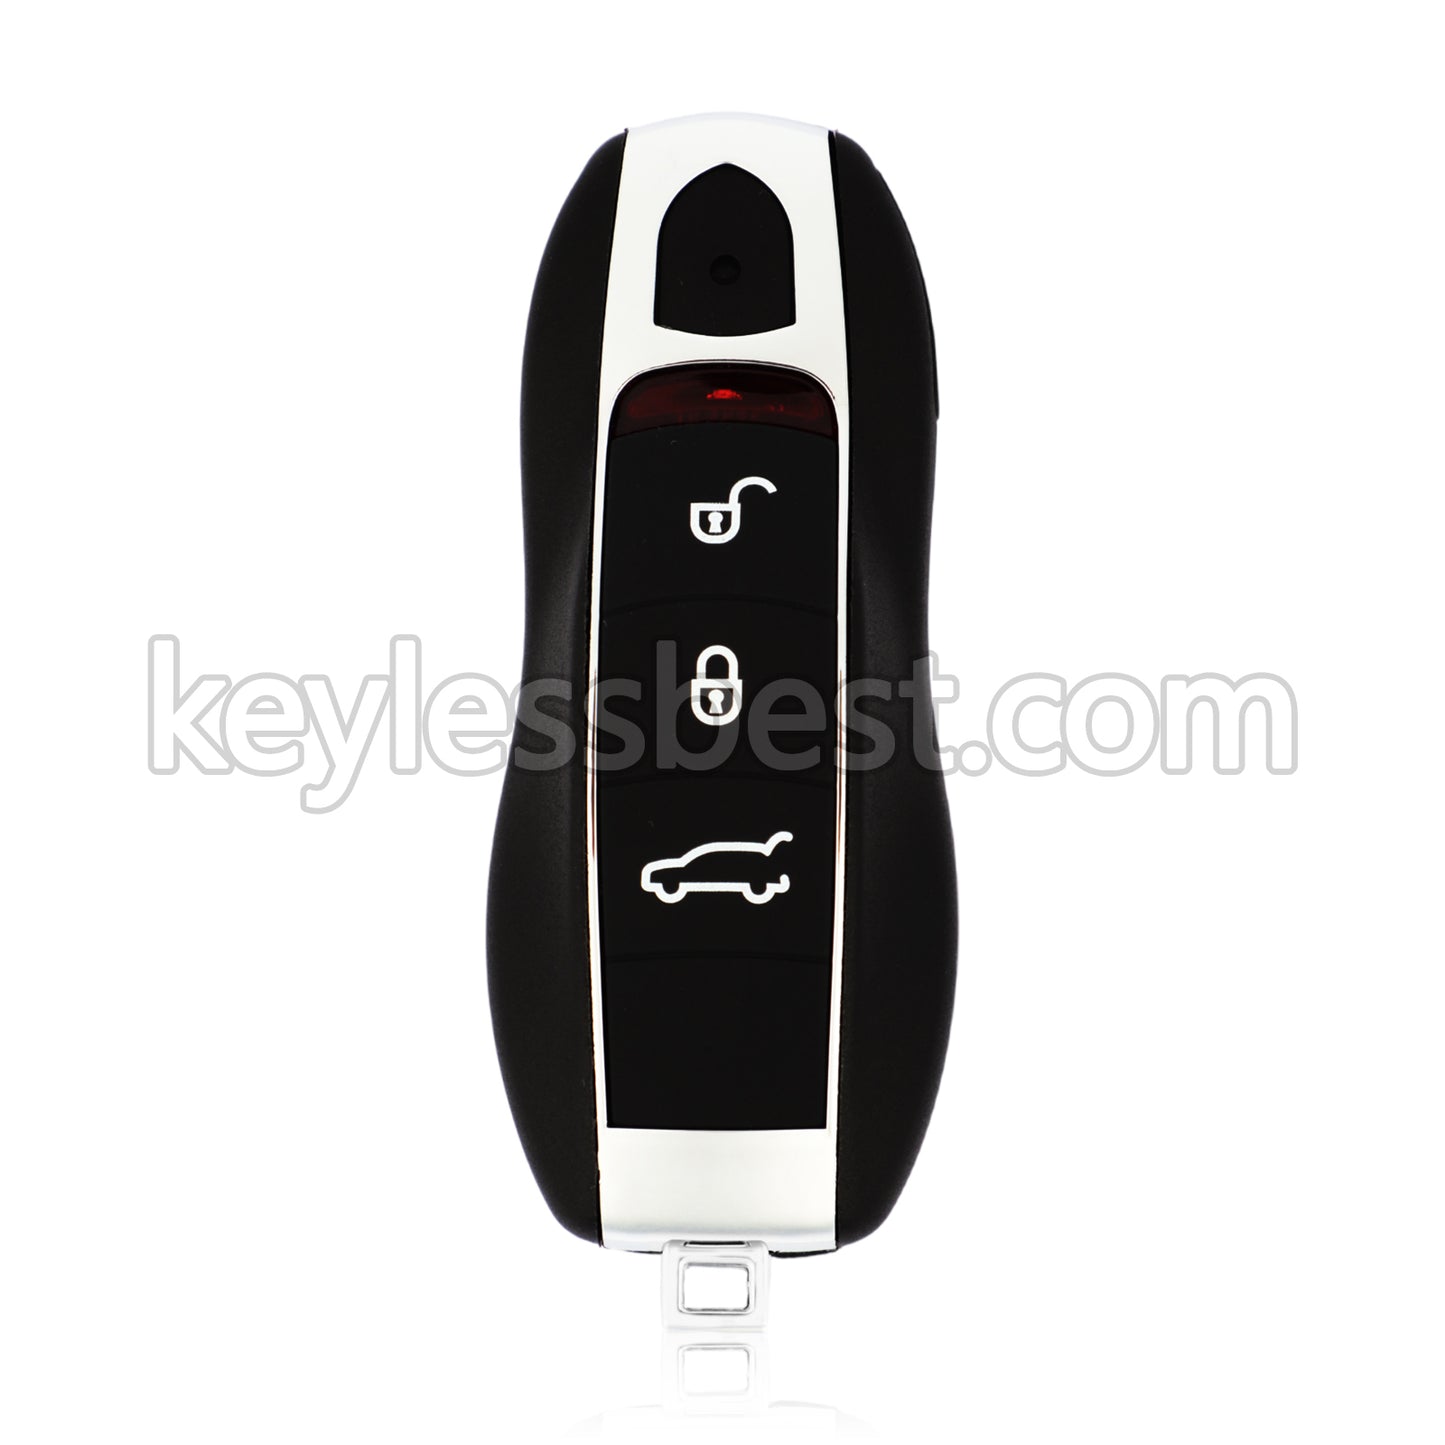 2010 - 2018 Porsche / 3 Buttons Remote Key / KR55WK50138 / 315MHz